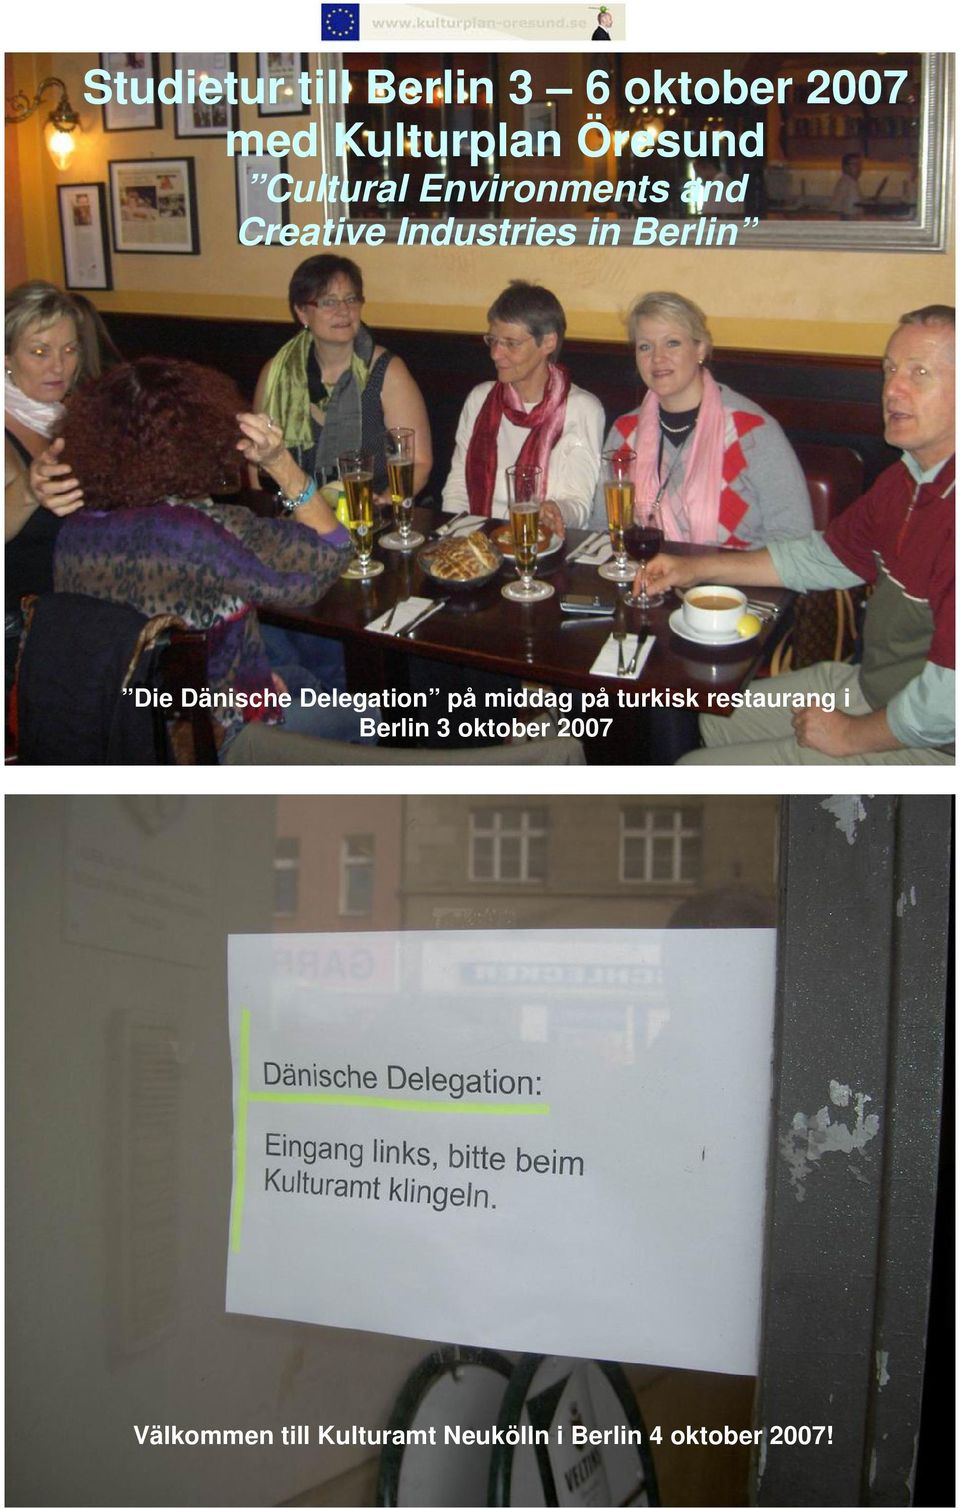 Dänische Delegation på middag på turkisk restaurang i Berlin 3